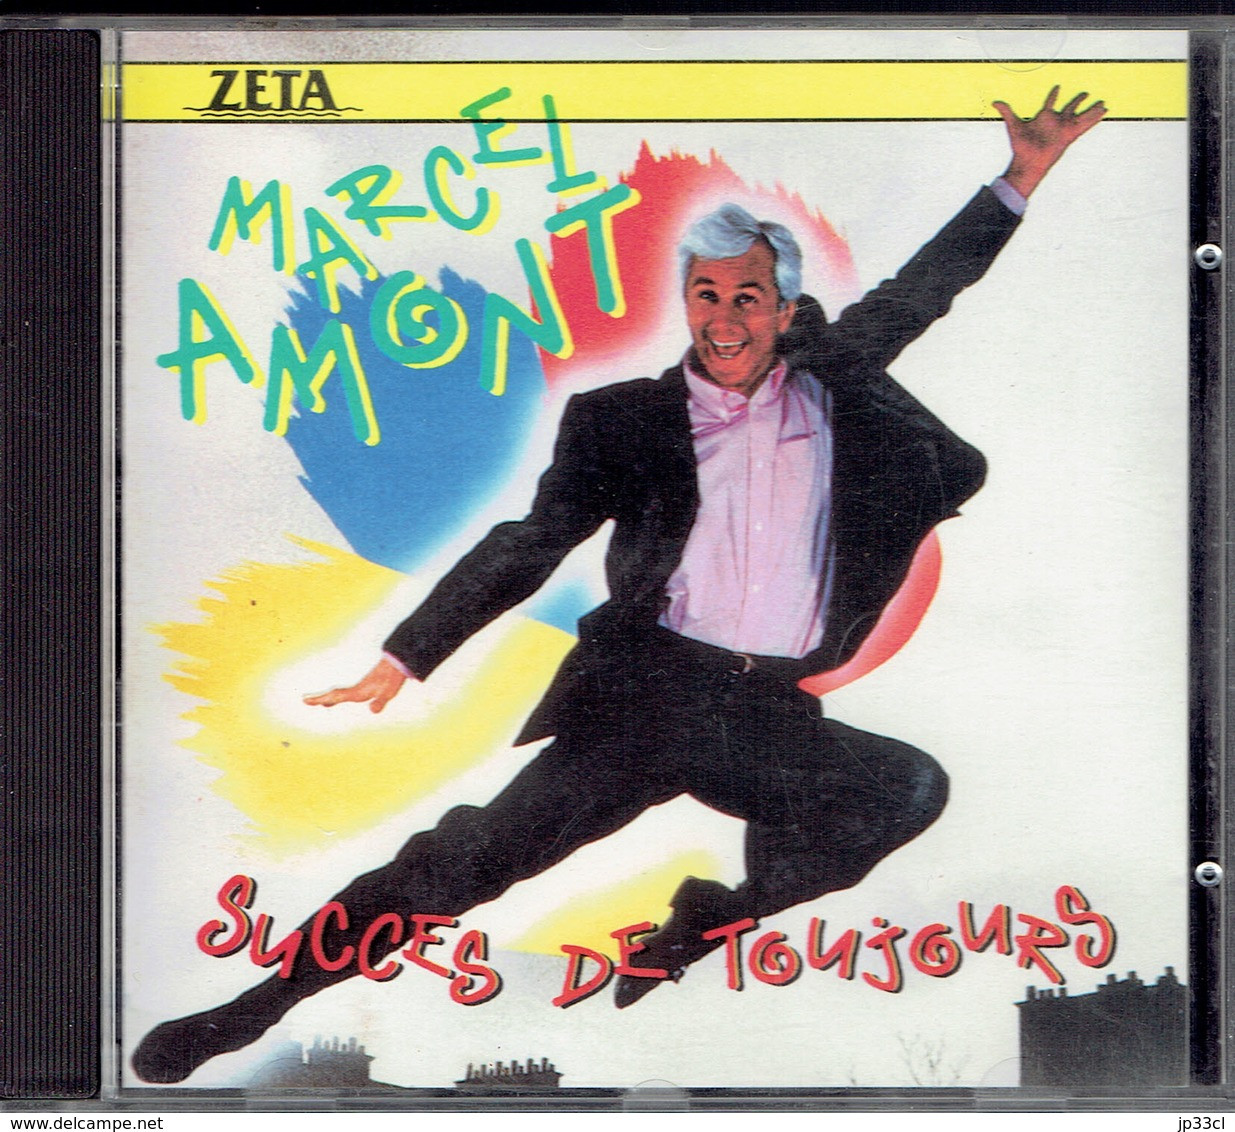 Succès De Toujours Par Marcel Amont (Zeta, 1989) - Hit-Compilations